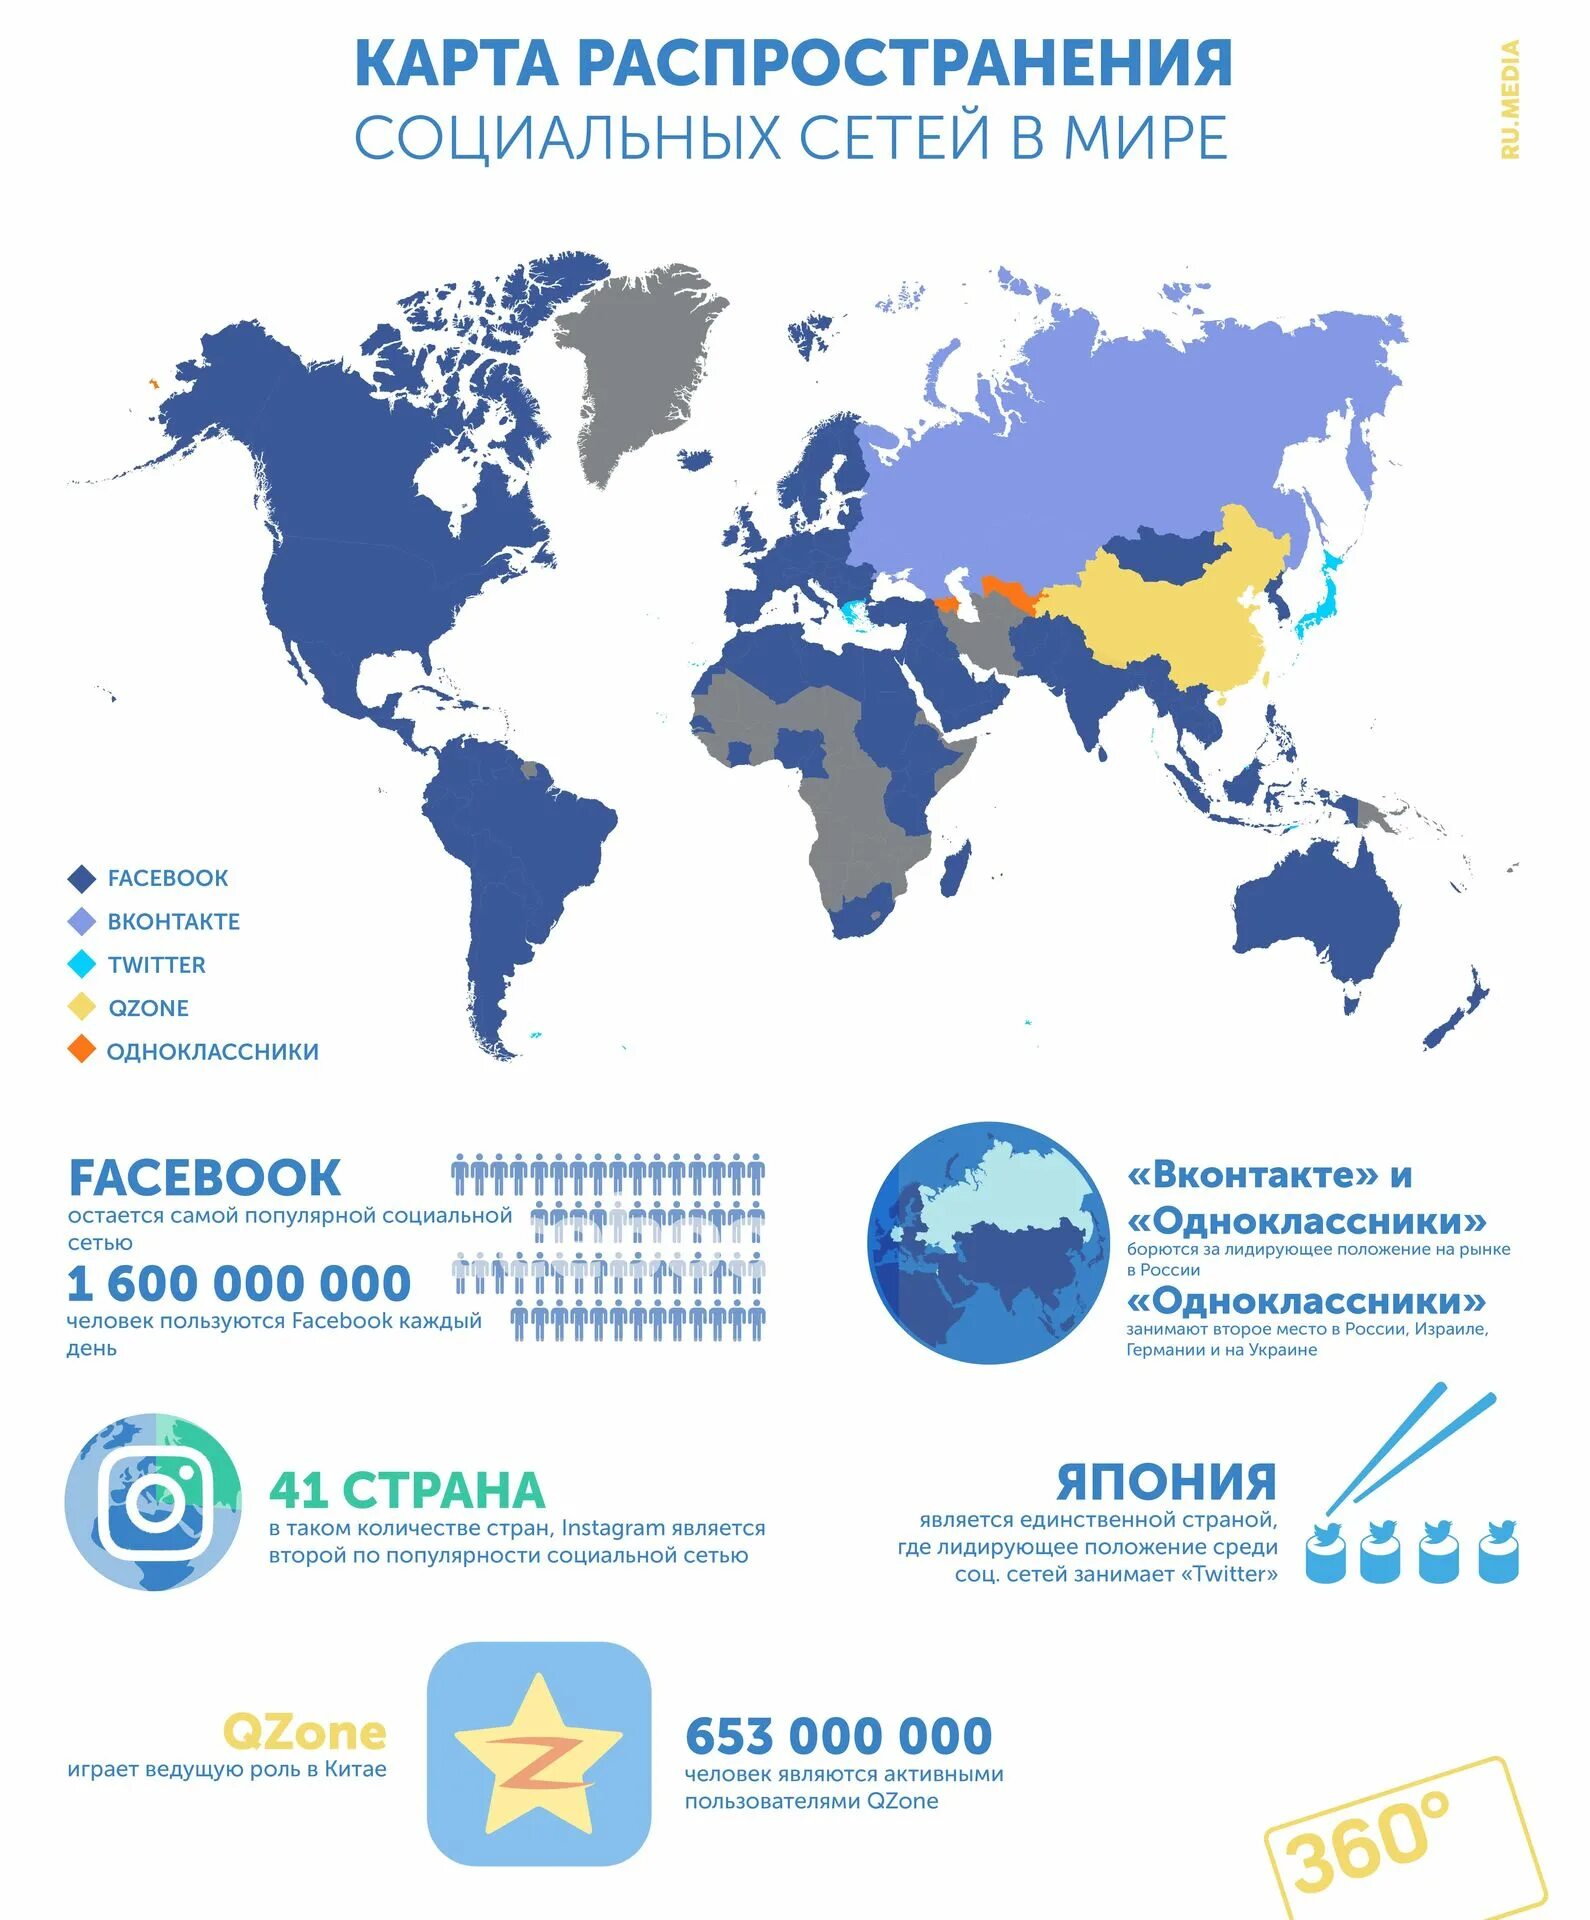 Интернет сети россии список. Распространение социальных сетей в мире. Карта распространения социальных сетей. Карта социальных сетей в мире. Карта распространения социальных сетей в мире.